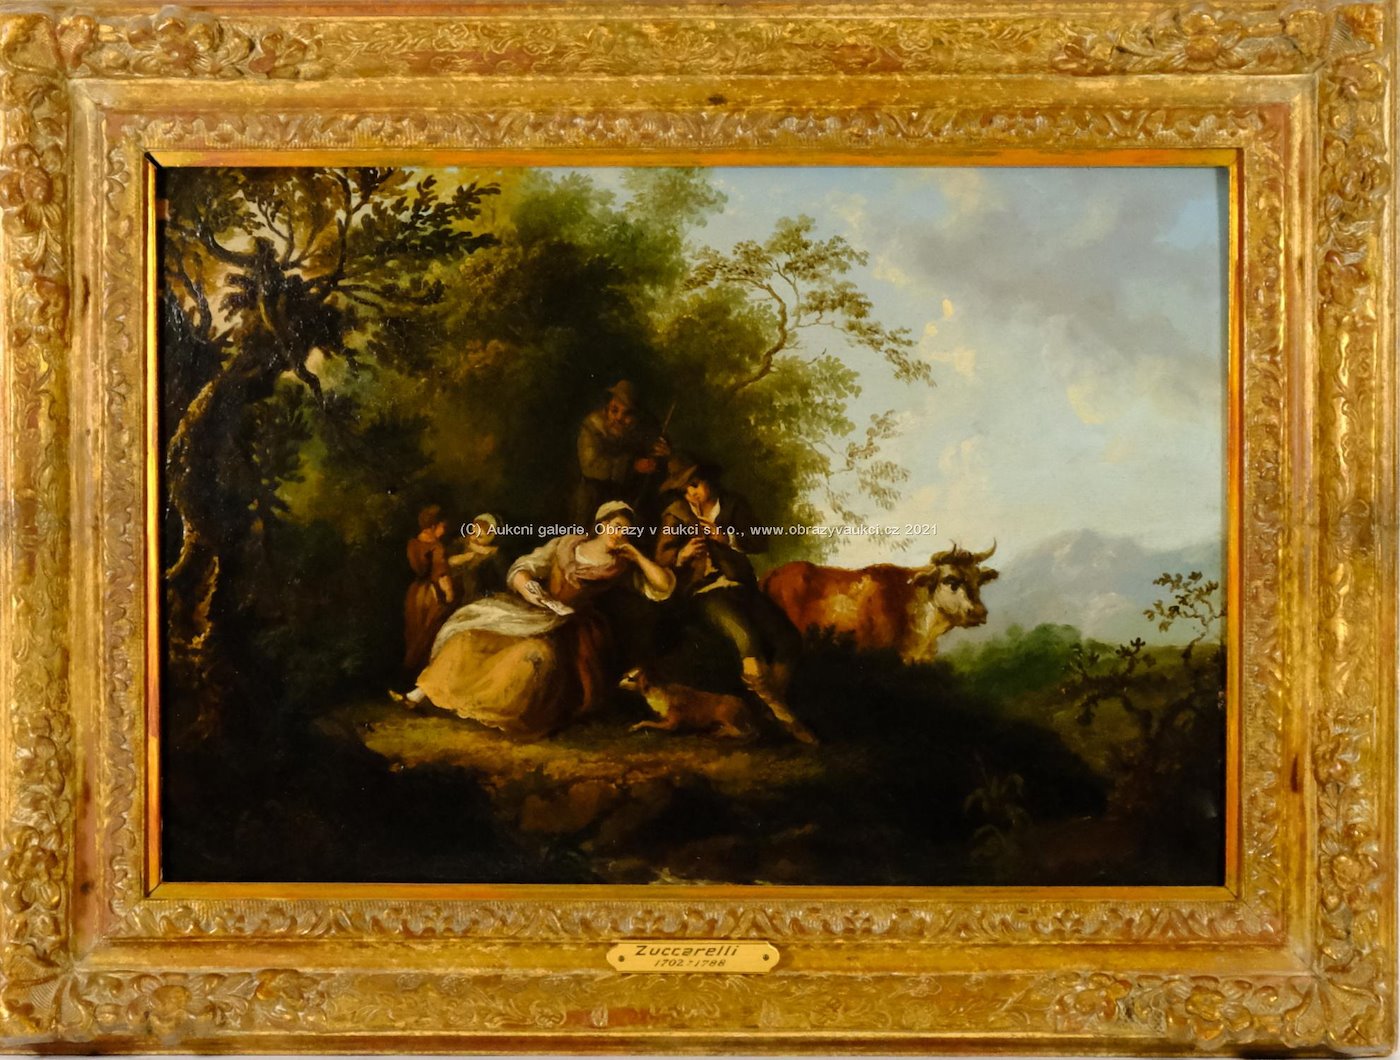 na rámu štítek Zuccarelli 1702–1788 - Odpočinek na kraji lesa